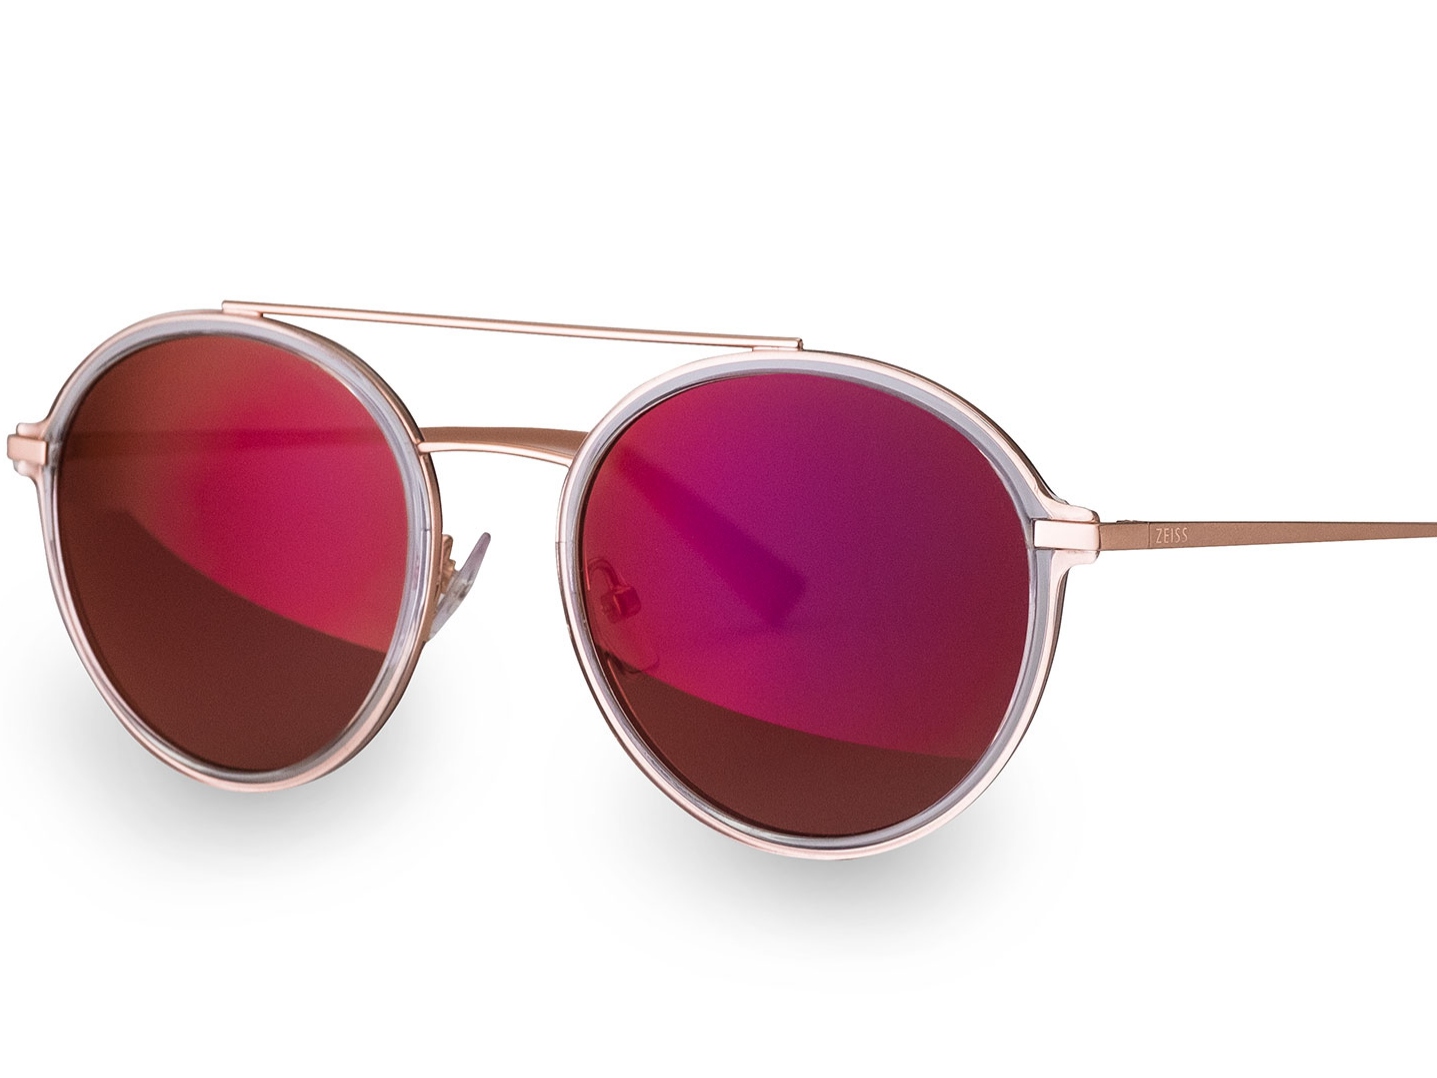 Fotografie módních slunečních brýlí se speciálním předním povrchem čočky ZEISS v červenorudé barvě 